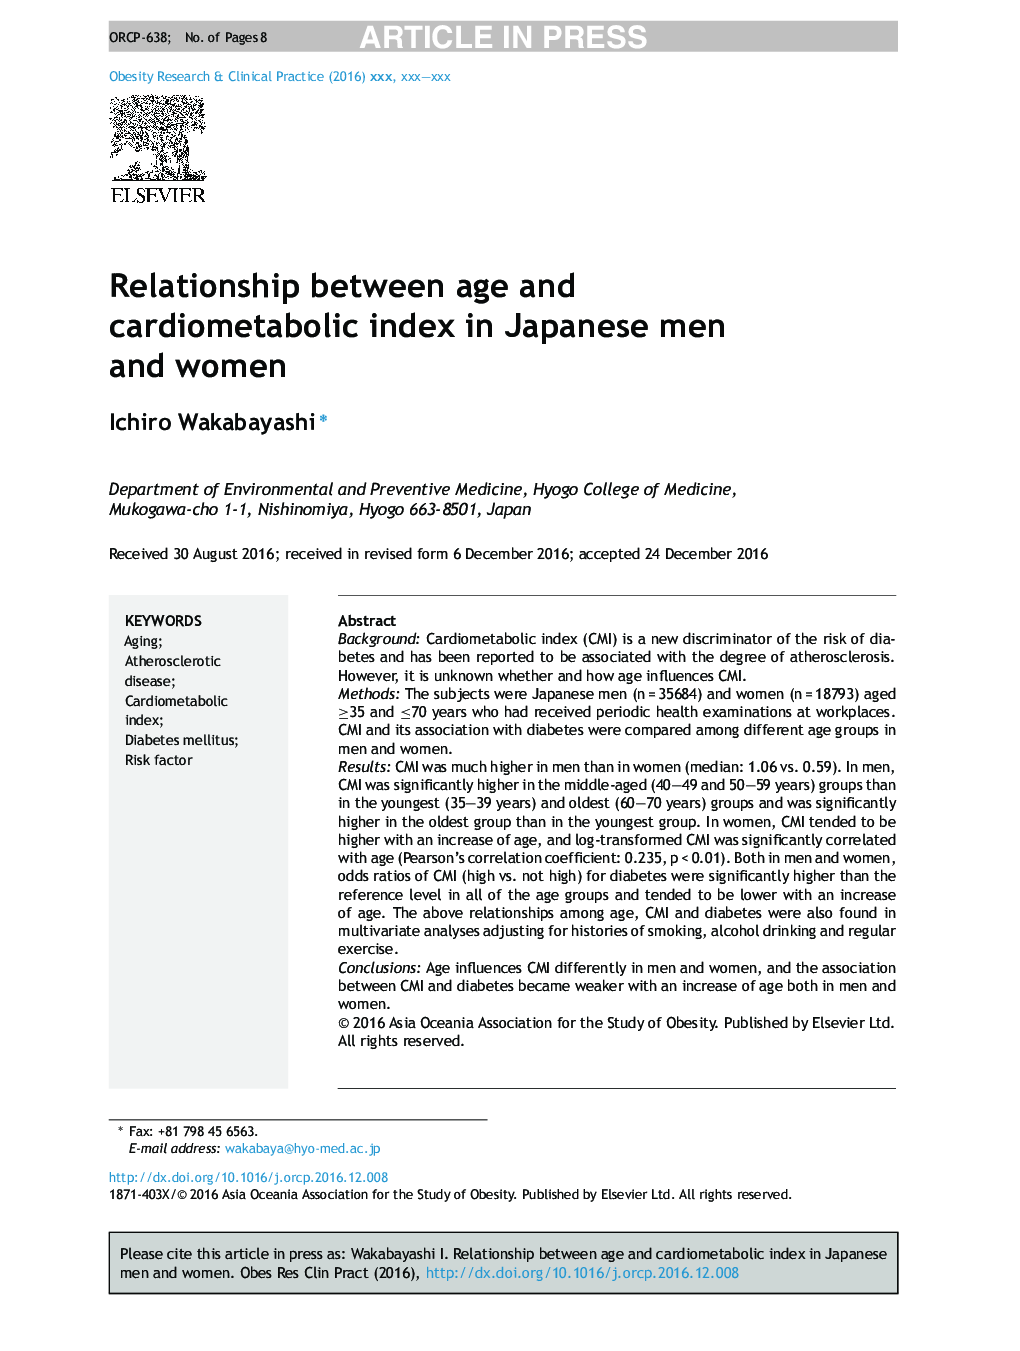 رابطه بین سن و شاخص قلب و عروق در مردان و مردان ژاپنی 